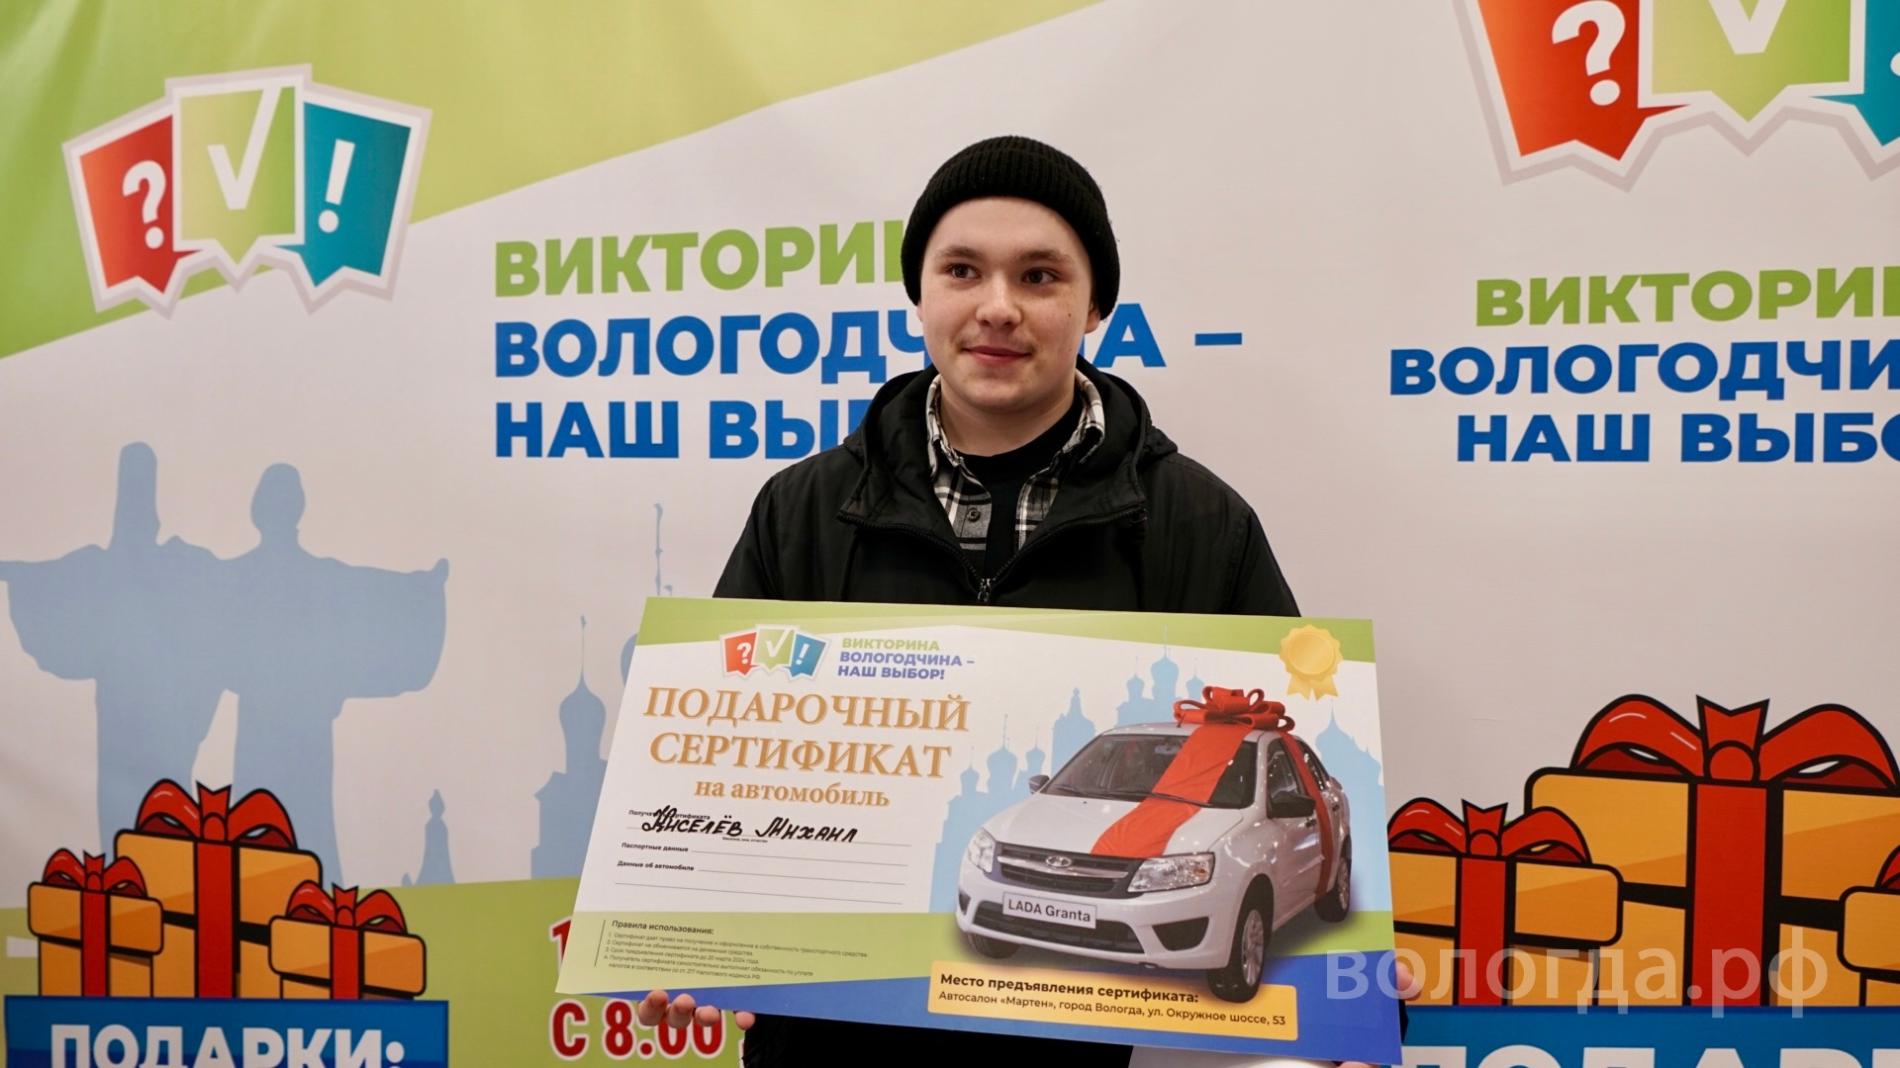 Обладатель третьего автомобиля Михаил Киселёв: «Звонок от организаторов викторины поступил, когда я занимался учёбой, очень приятно»